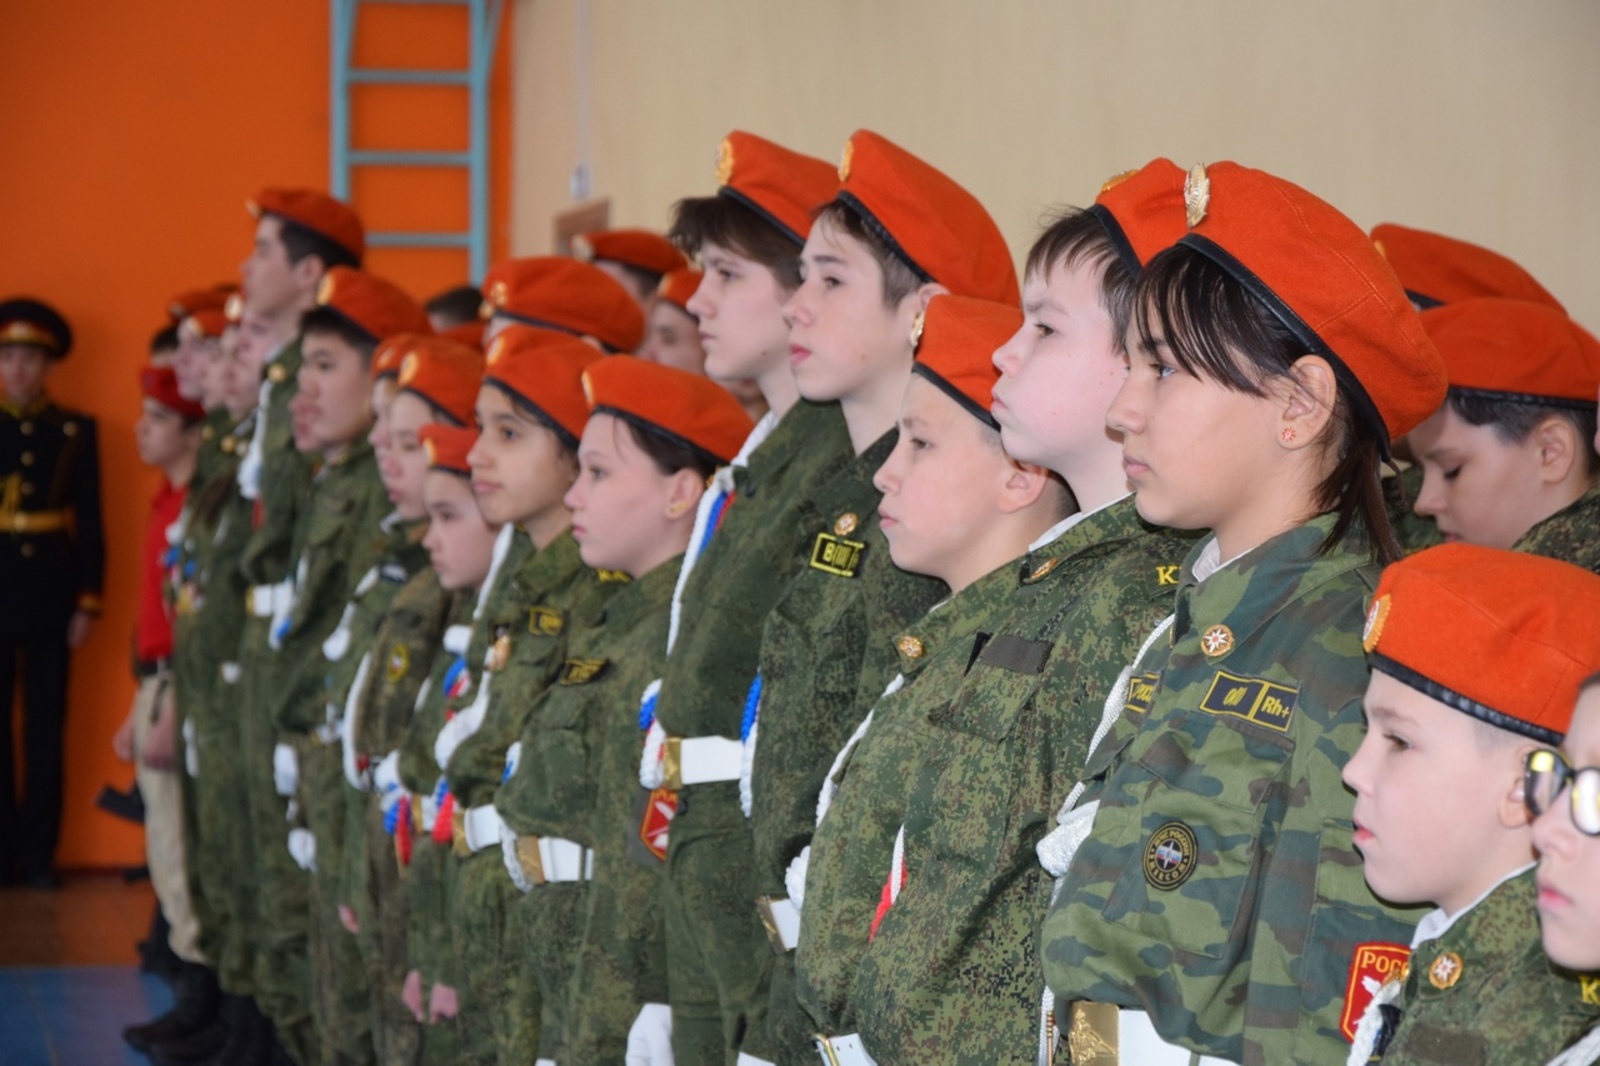 30 школьников вступили в ряды кадетского корпуса школы №4 Мелеуза